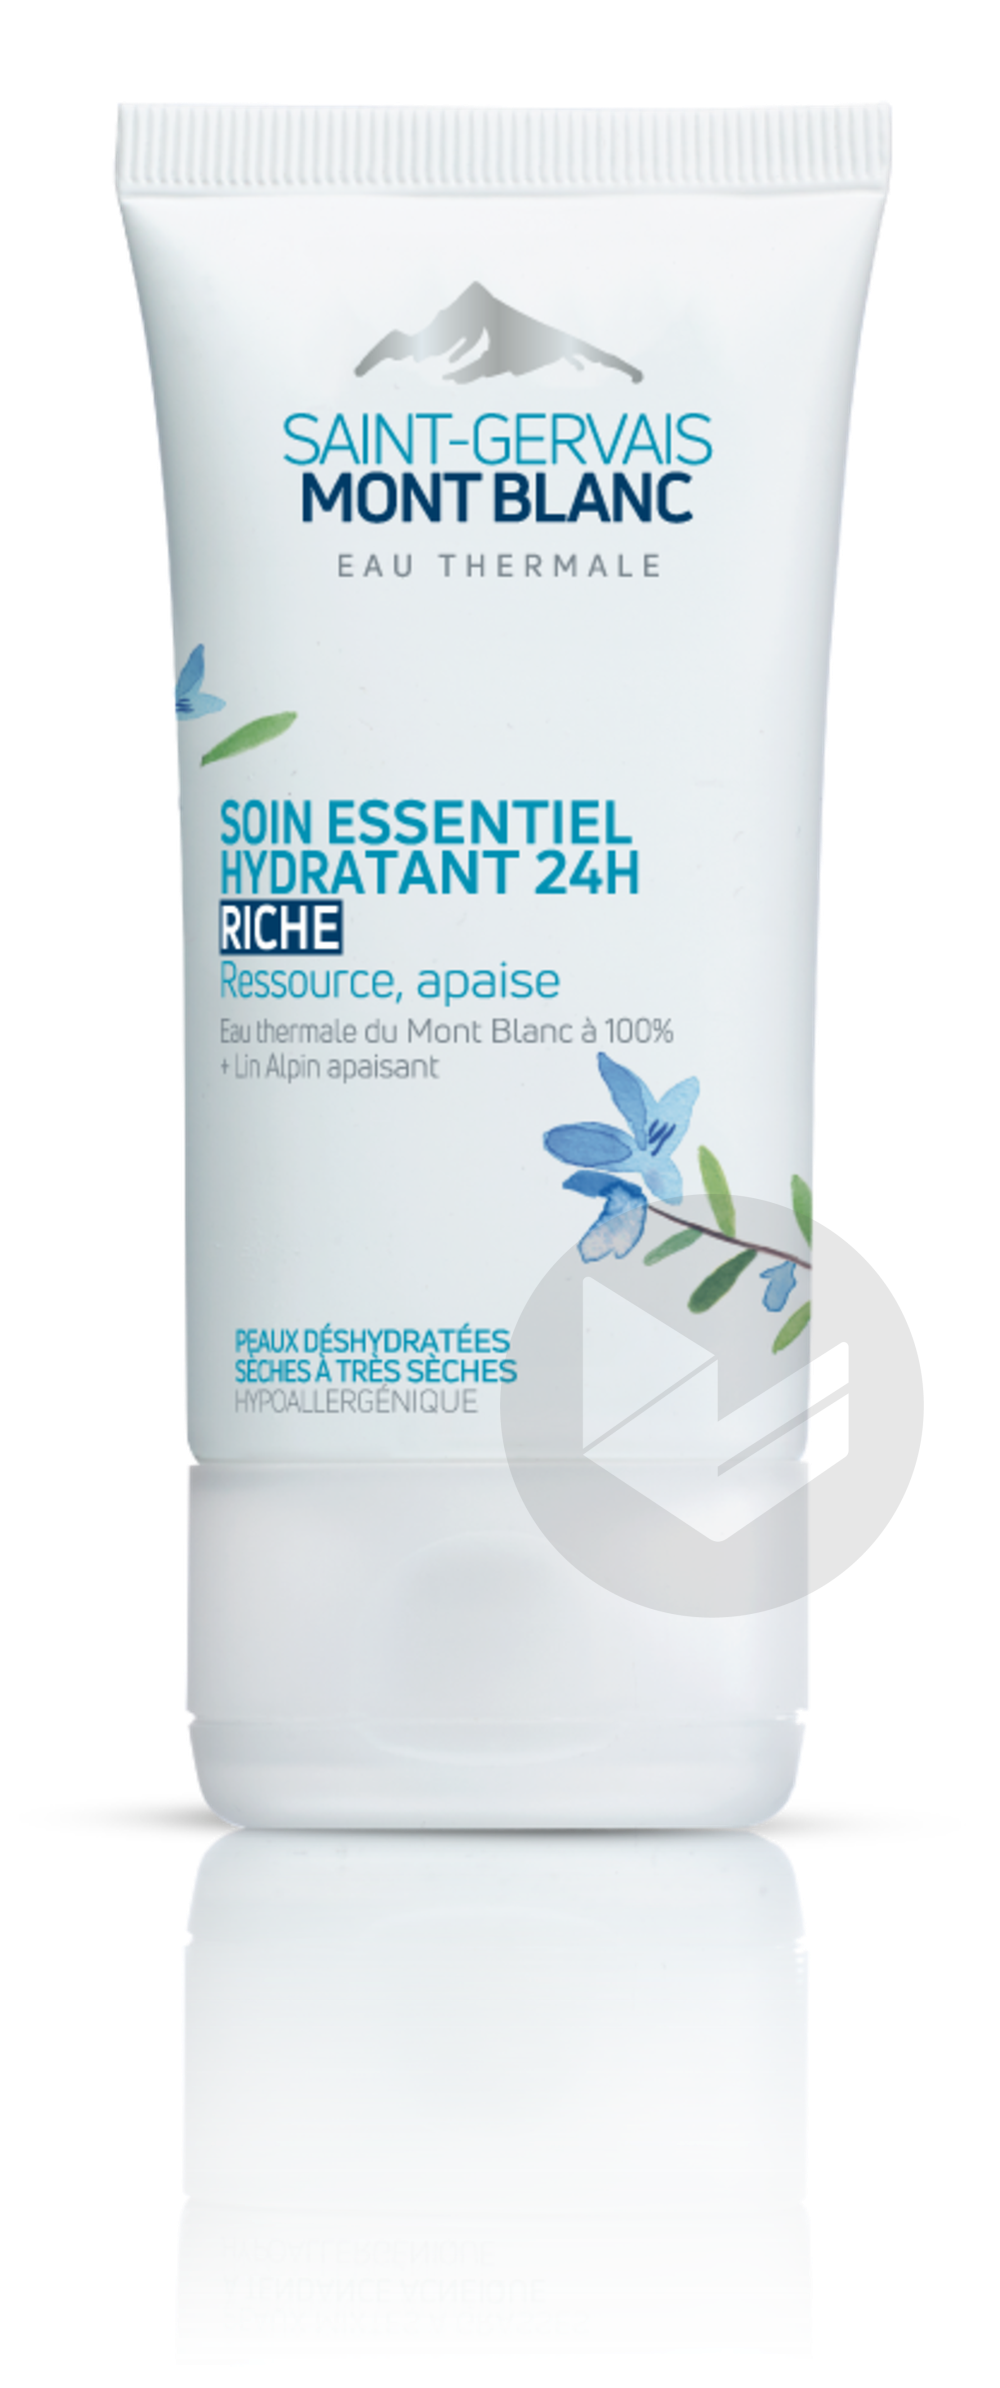 Saint-Gervais Mont Blanc Peaux deshydratées Soin visage essentiel riche pour hydrater durablement les peaux sèches à très sèches. 40 ml